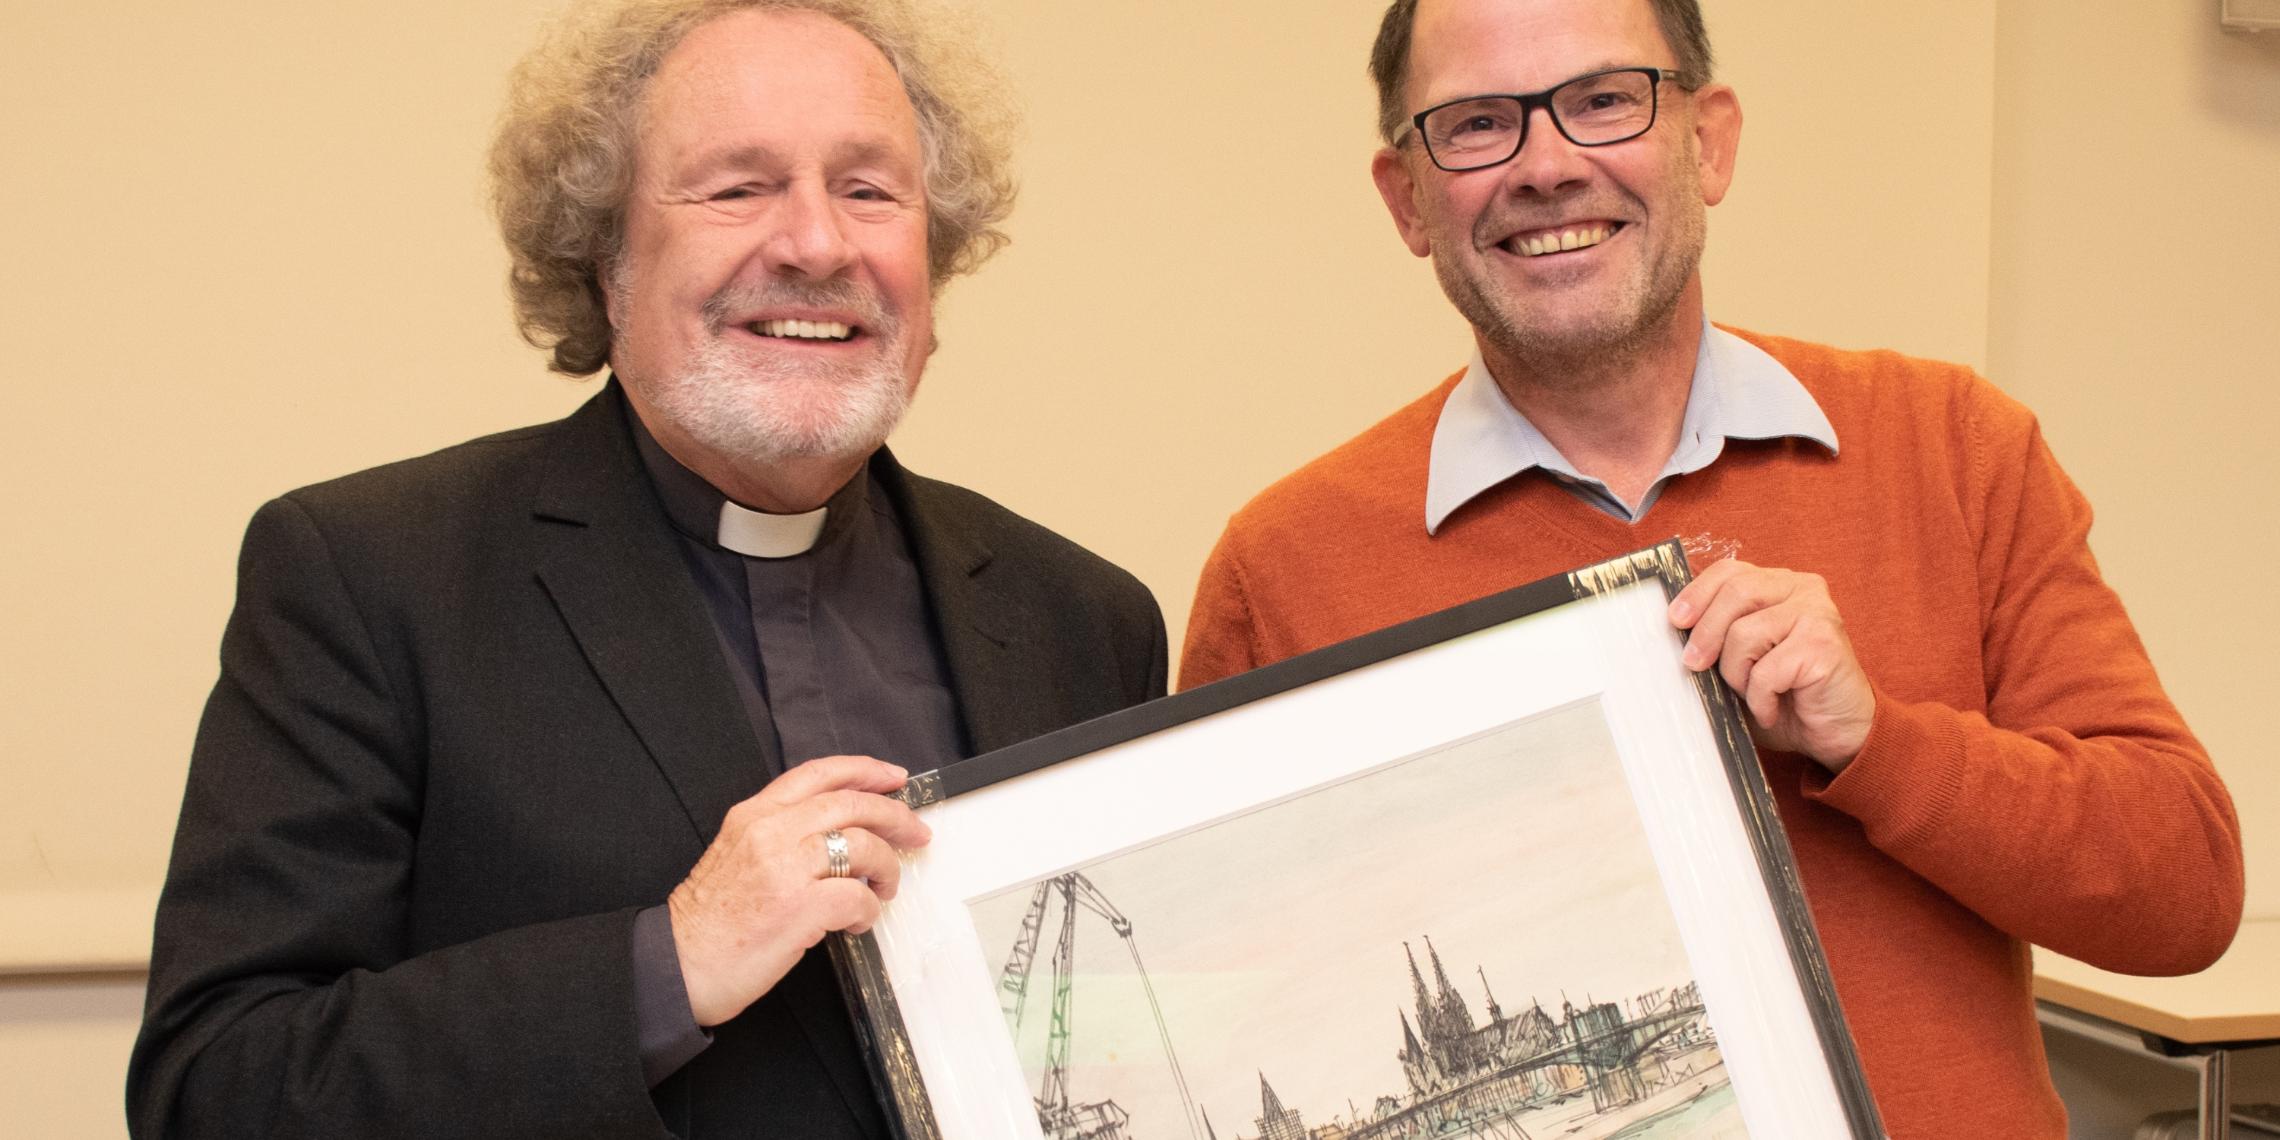 Vorstand Hans-Peter Merzbach überreichte Weihbischof Rolf Steinhäuser als Dank für das Gespräch eine westfälische Darstellung des Kölner Domes.